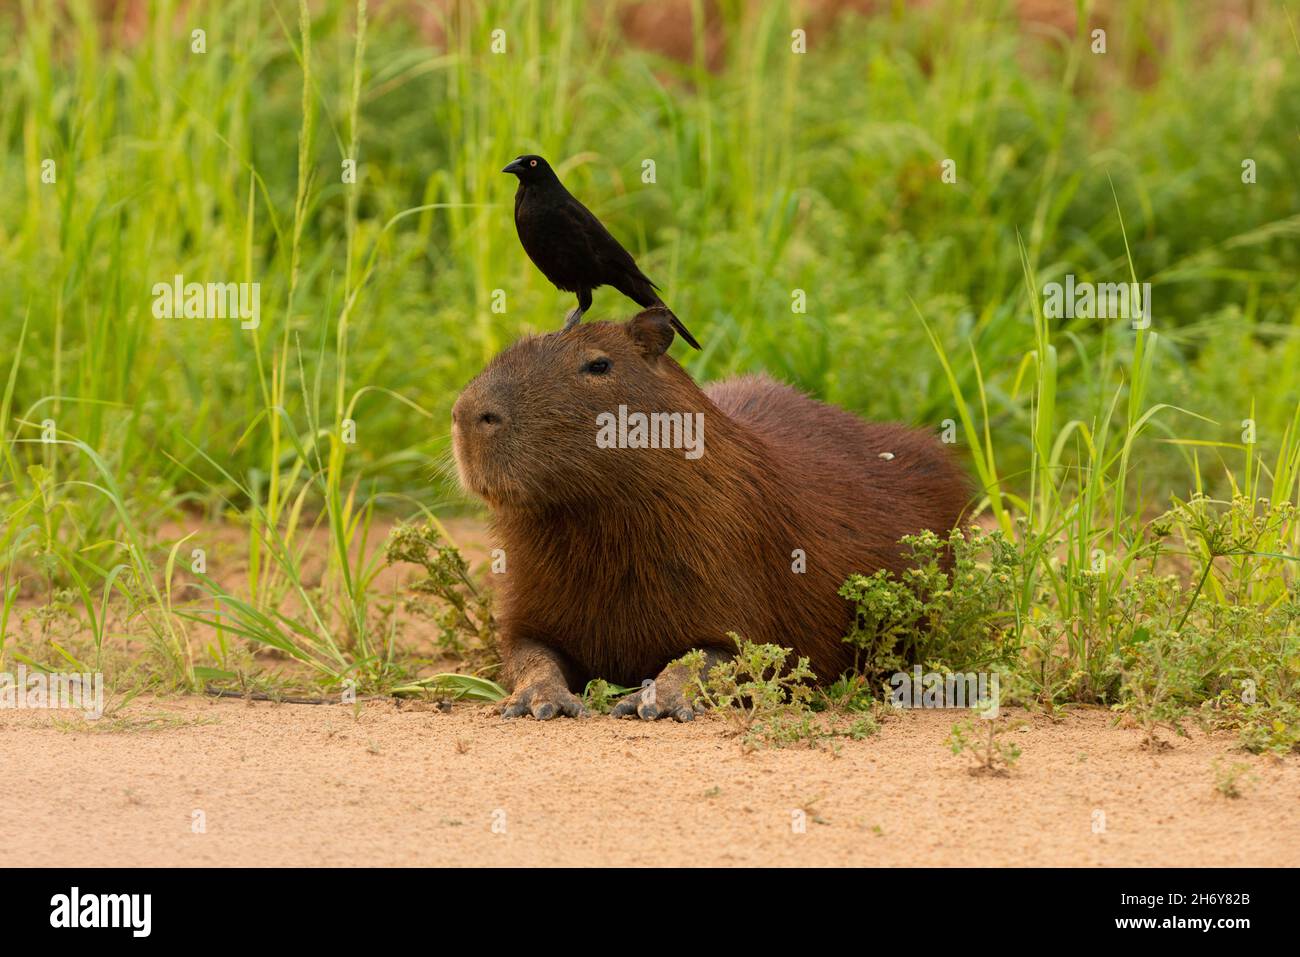 Un cowbird géant (Molothrus oryzovorus) cueillant des tiques d'une fourrure de Capybara, dans une relation mutualiste. Banque D'Images